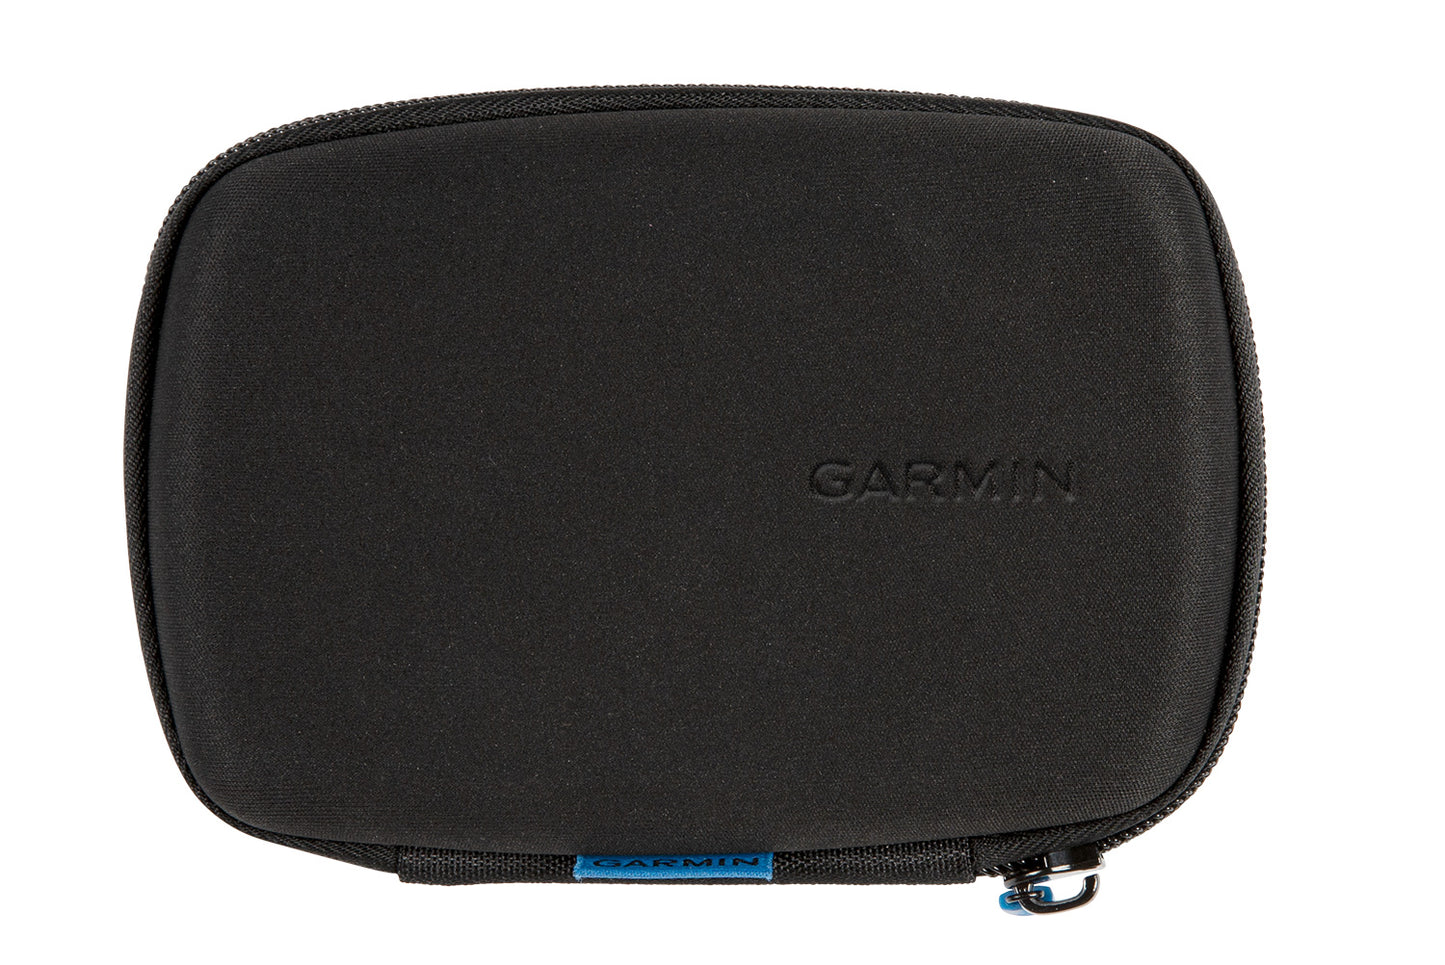 GARMIN storage bag for navigation devices - black